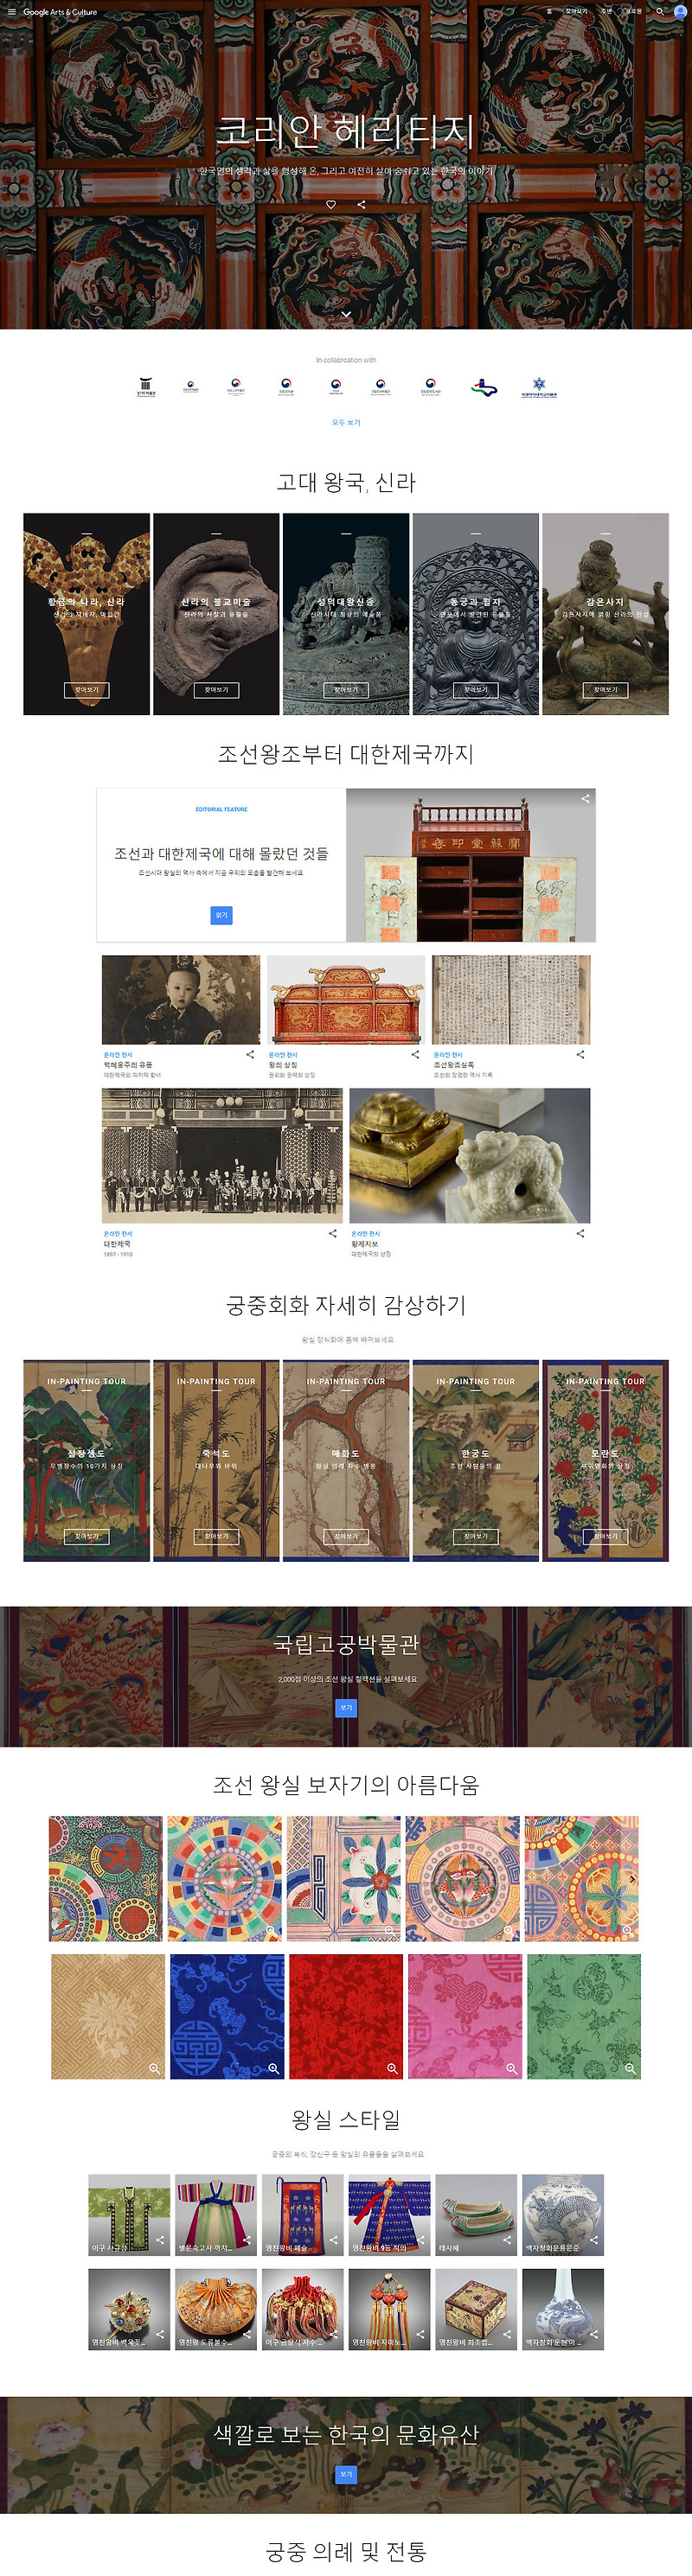 구글, 한국의 역사,문화유산 소개 '코리안 헤리티지' 온라인 전시